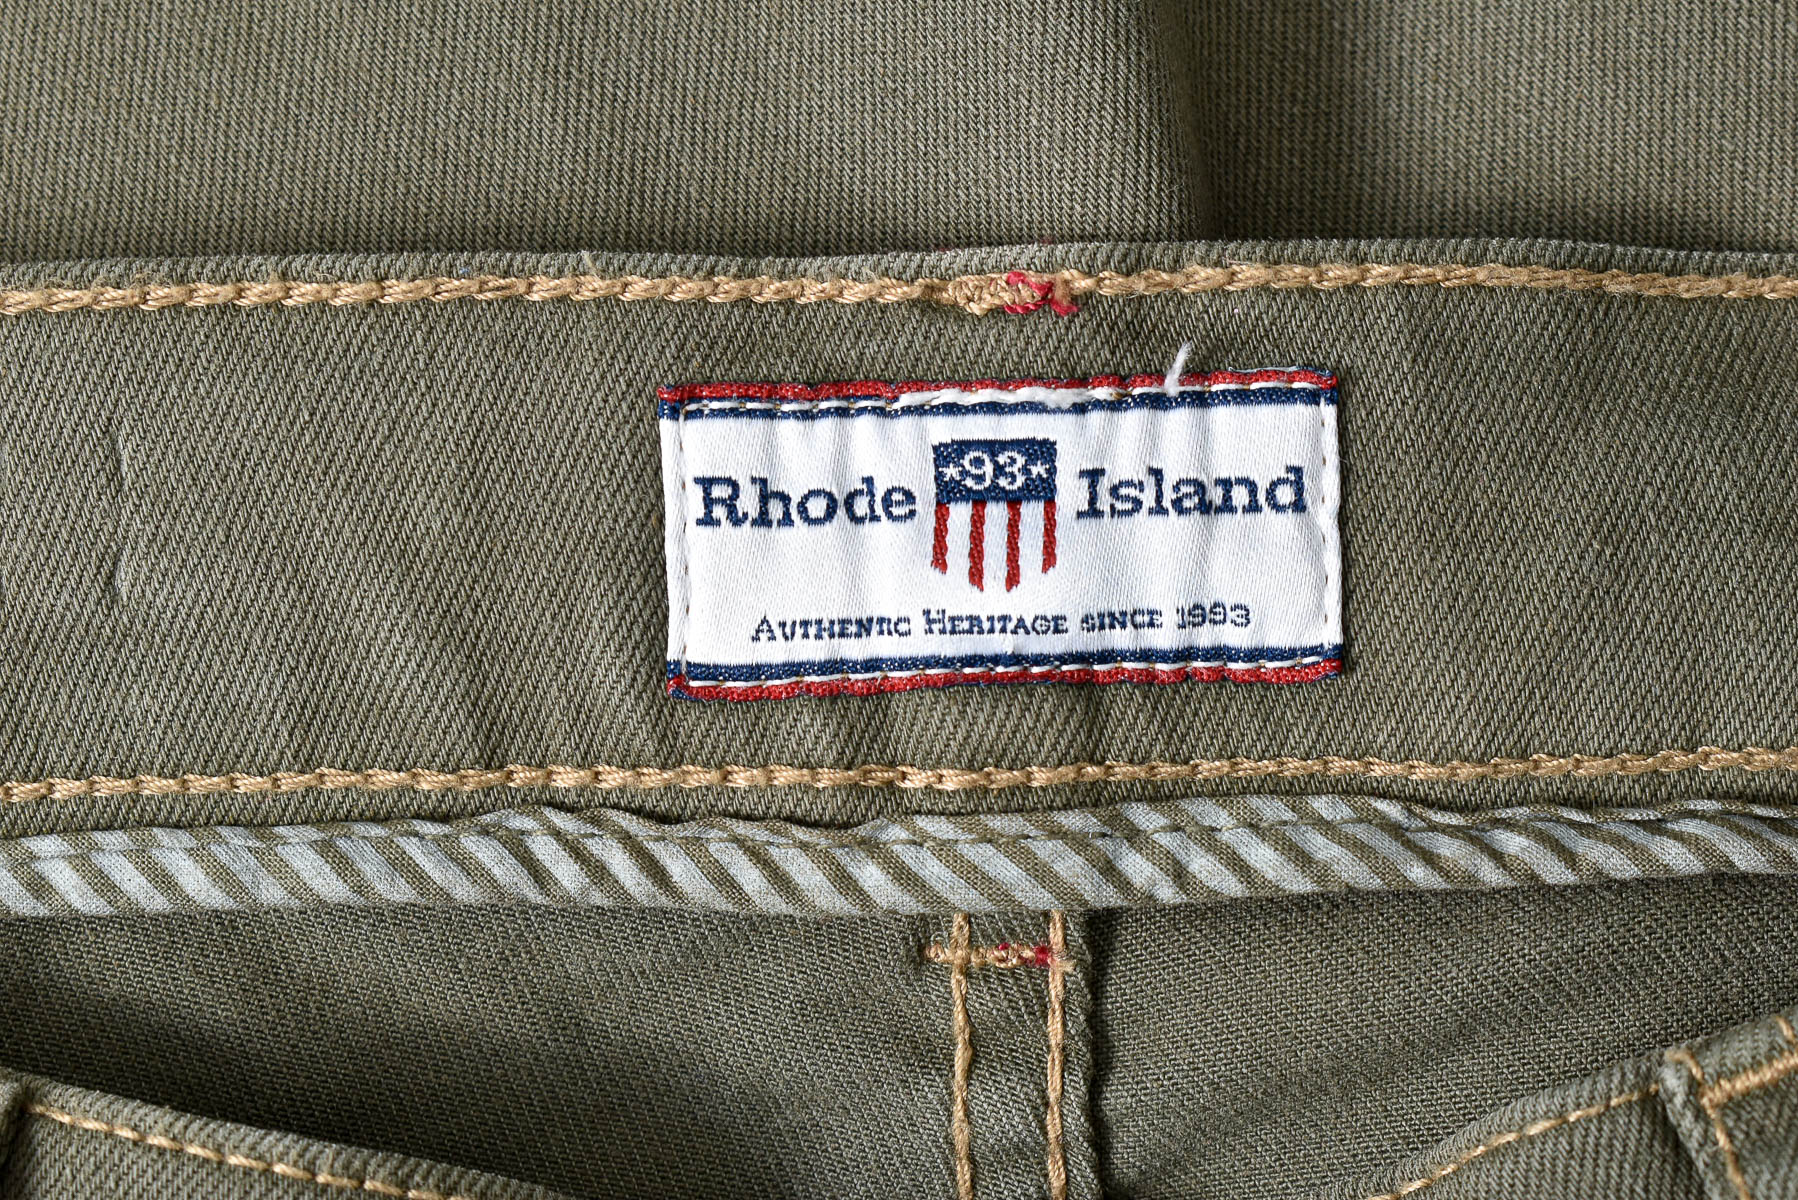 Men's trousers - Rhode Island - 2